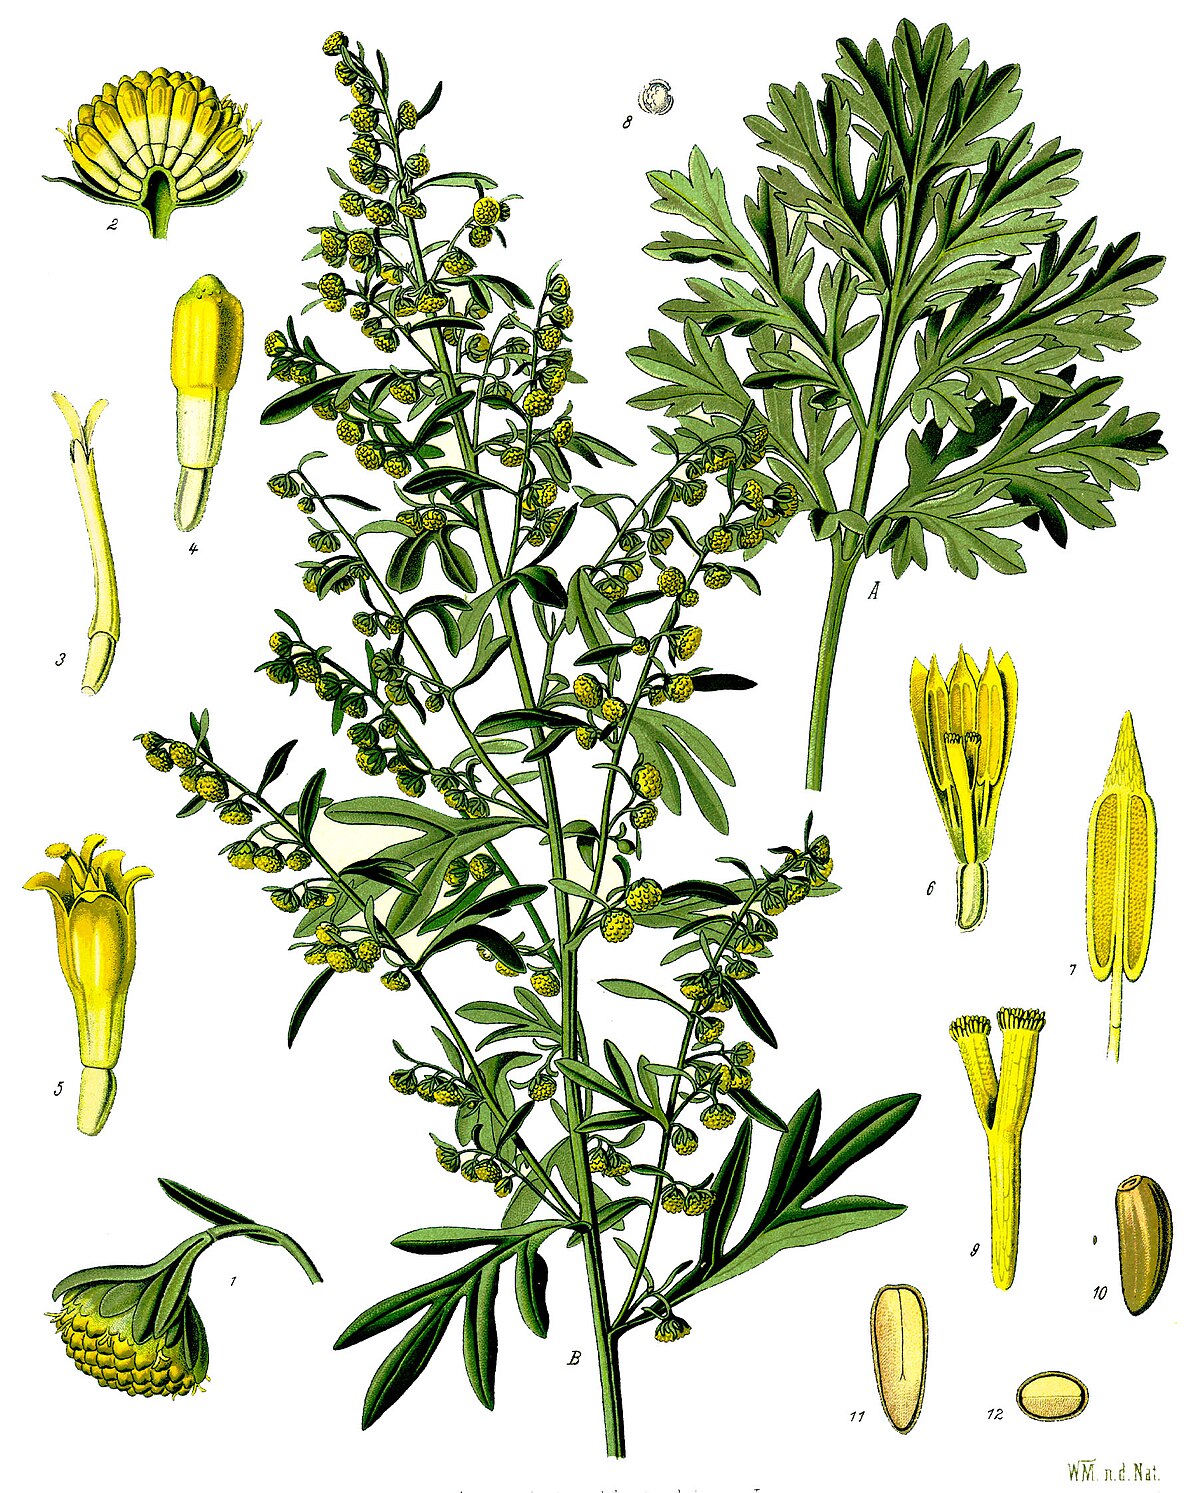 Fehér üröm gyógyhatása (Artemisa absinthium)